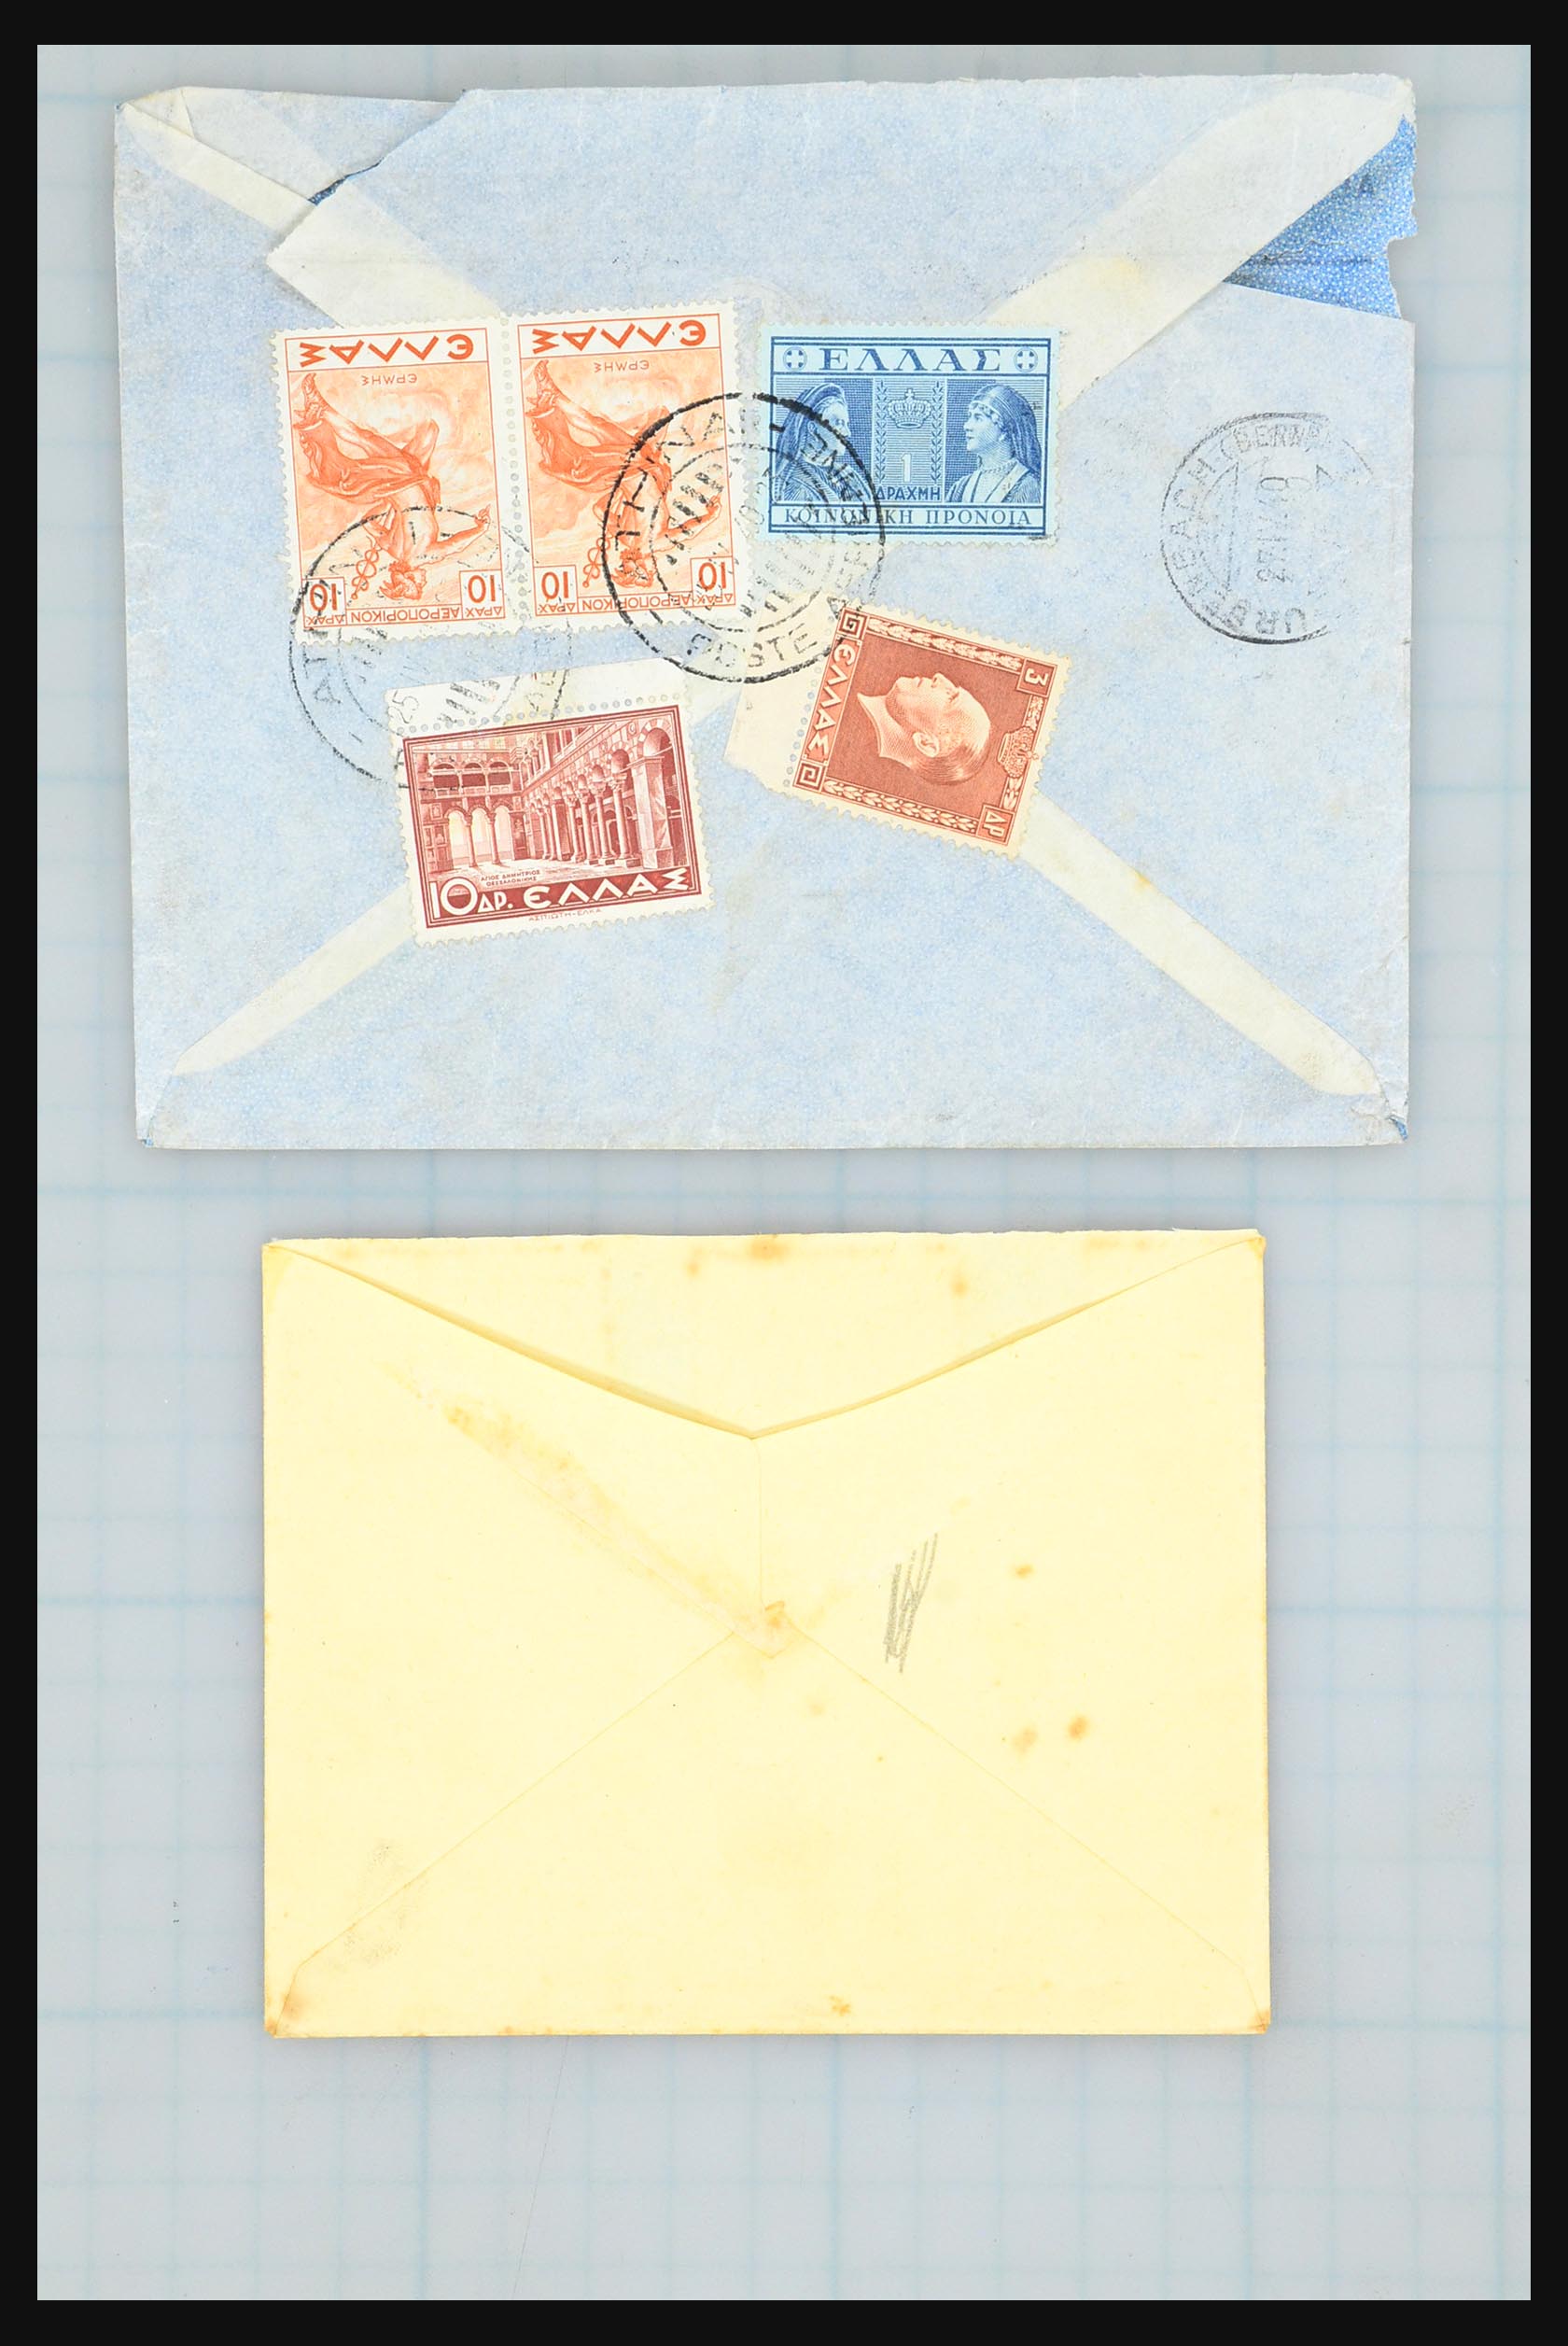 31358 015 - 31358 Portugal/Luxemburg/Griekenland brieven 1880-1960.